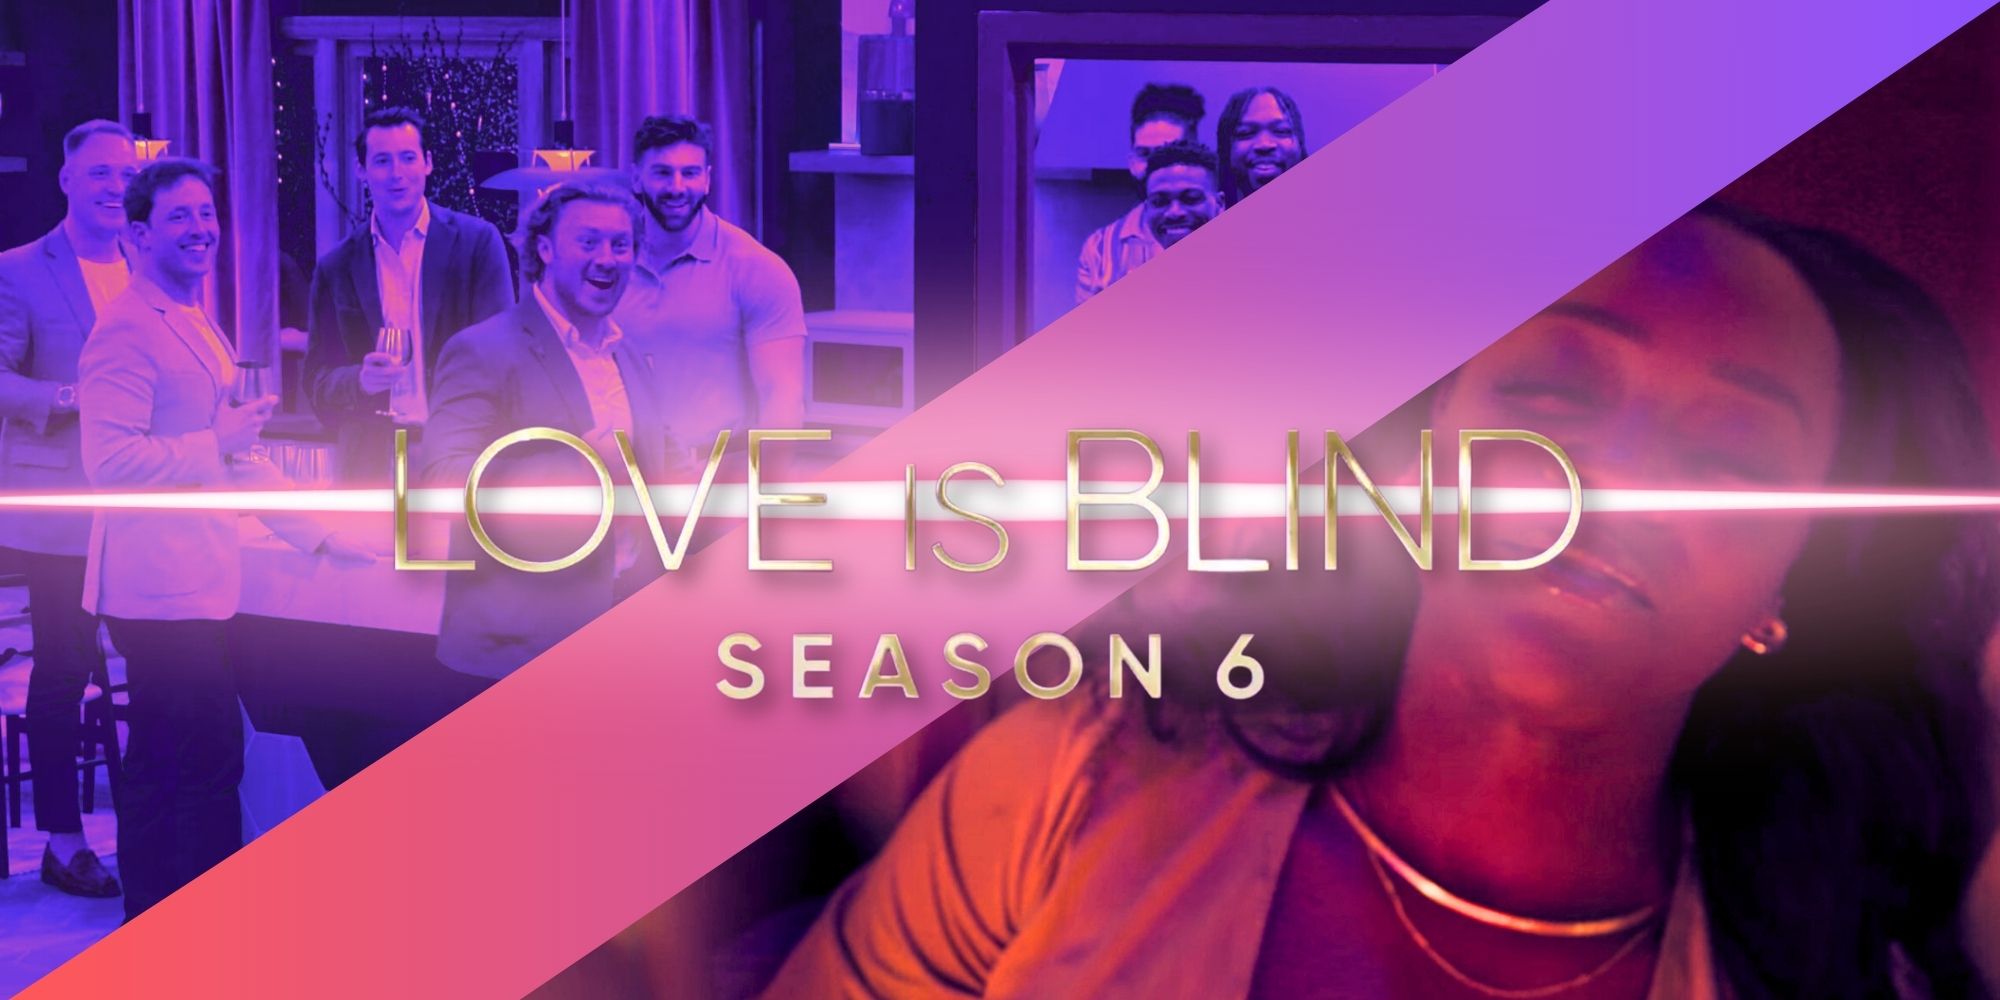 El concursante de la temporada 6 de This Love Is Blind es una “bandera roja andante”, según AD Smith